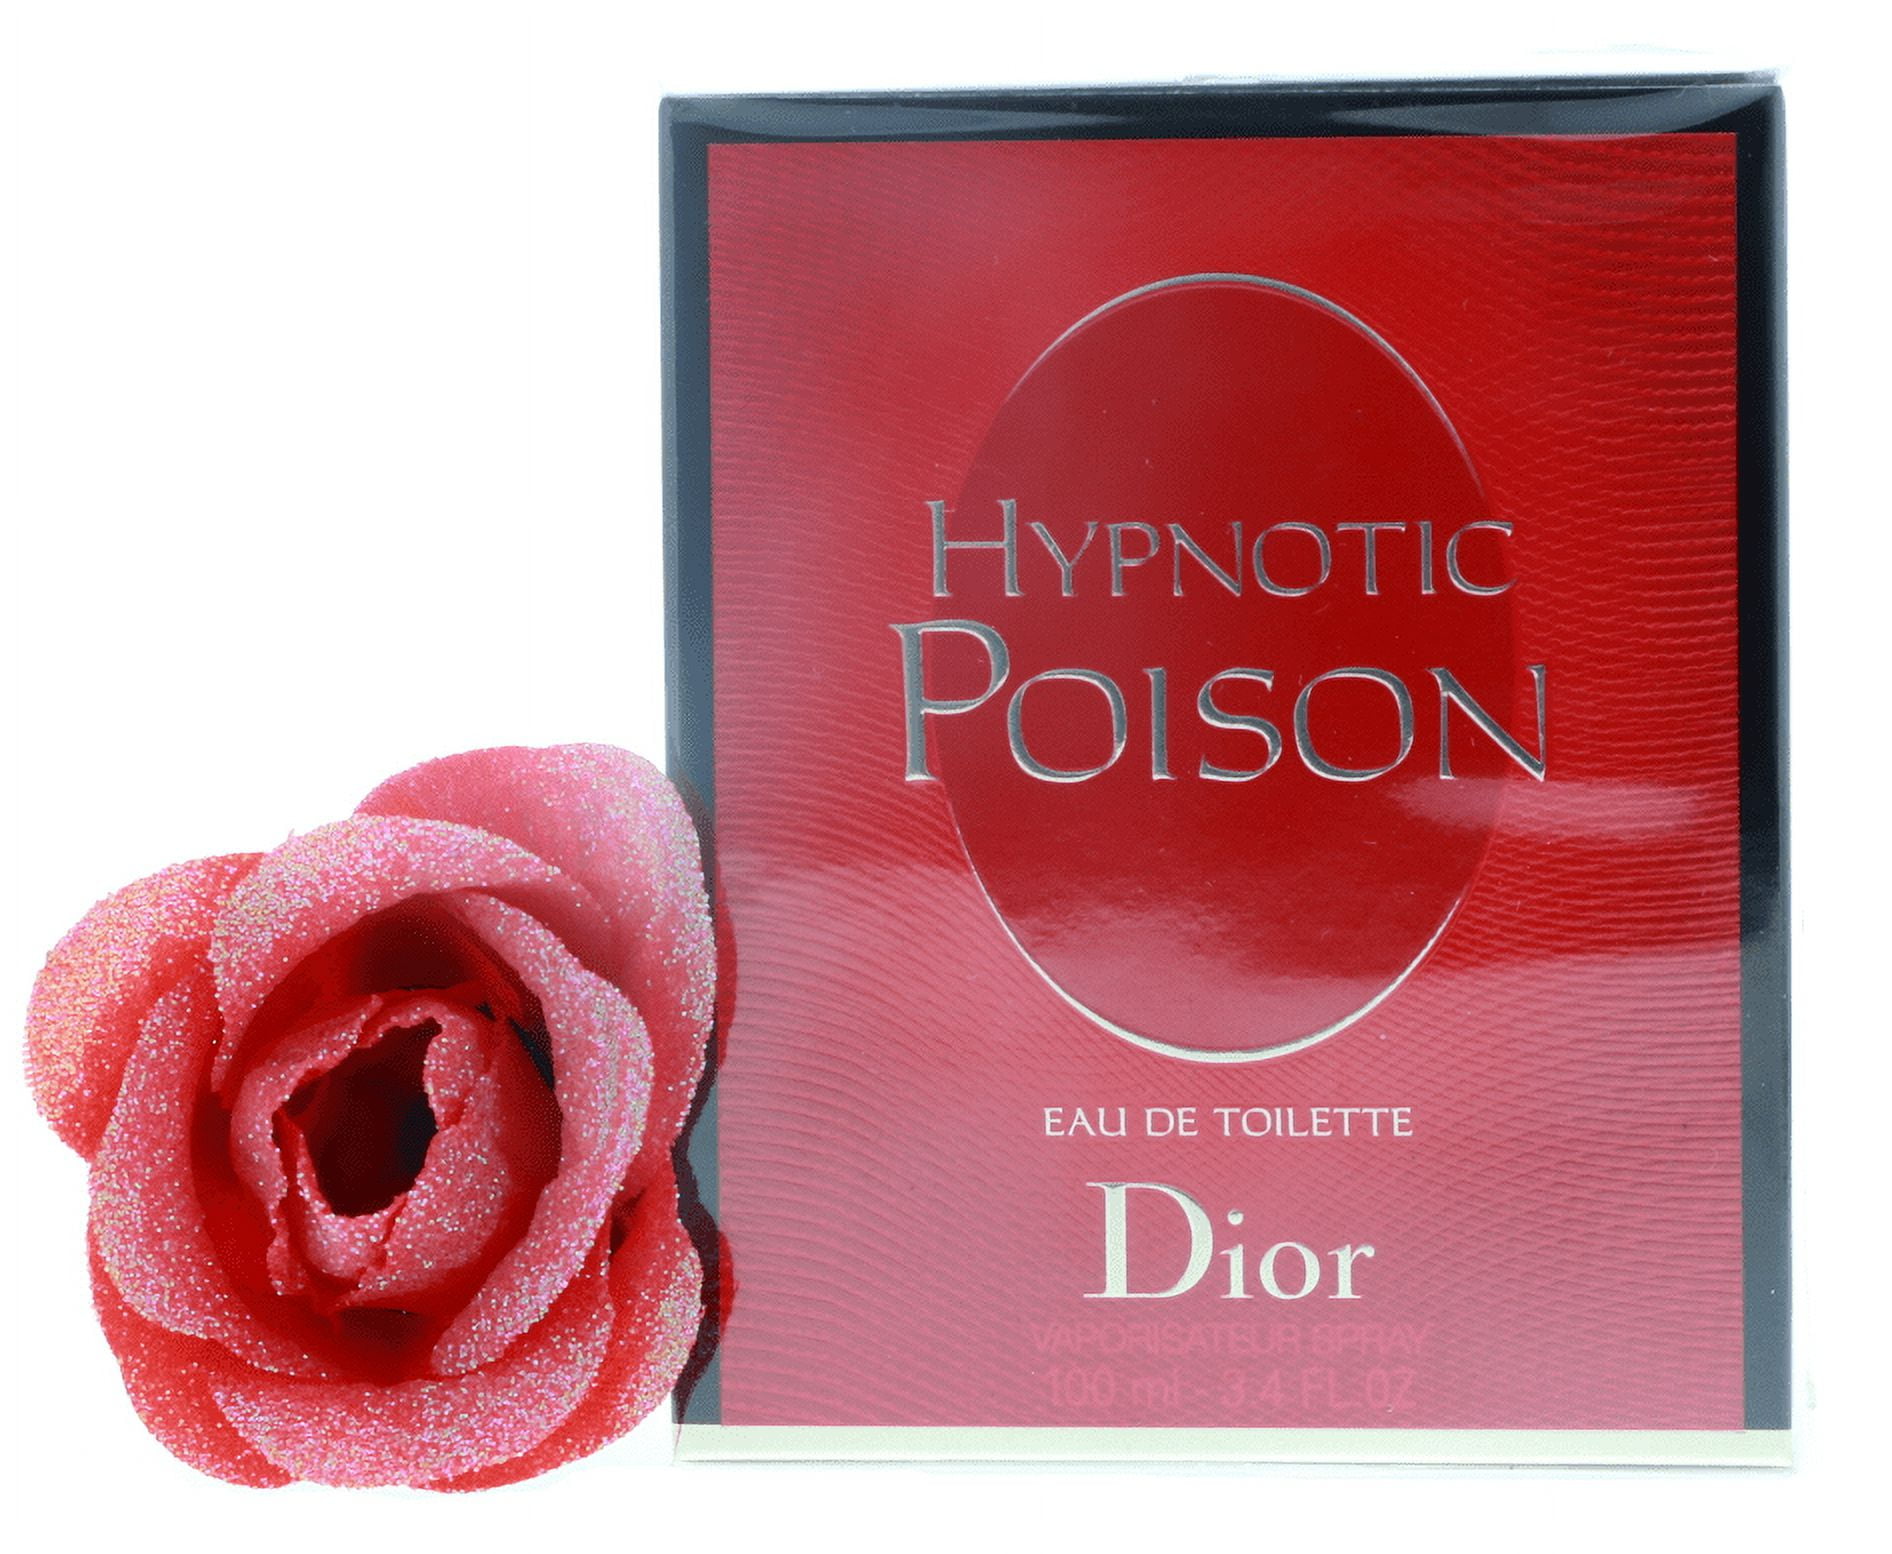 Hypnotic Poison by Christian Dior Eau De Toilette Spray 5 oz For Women  8944366082169